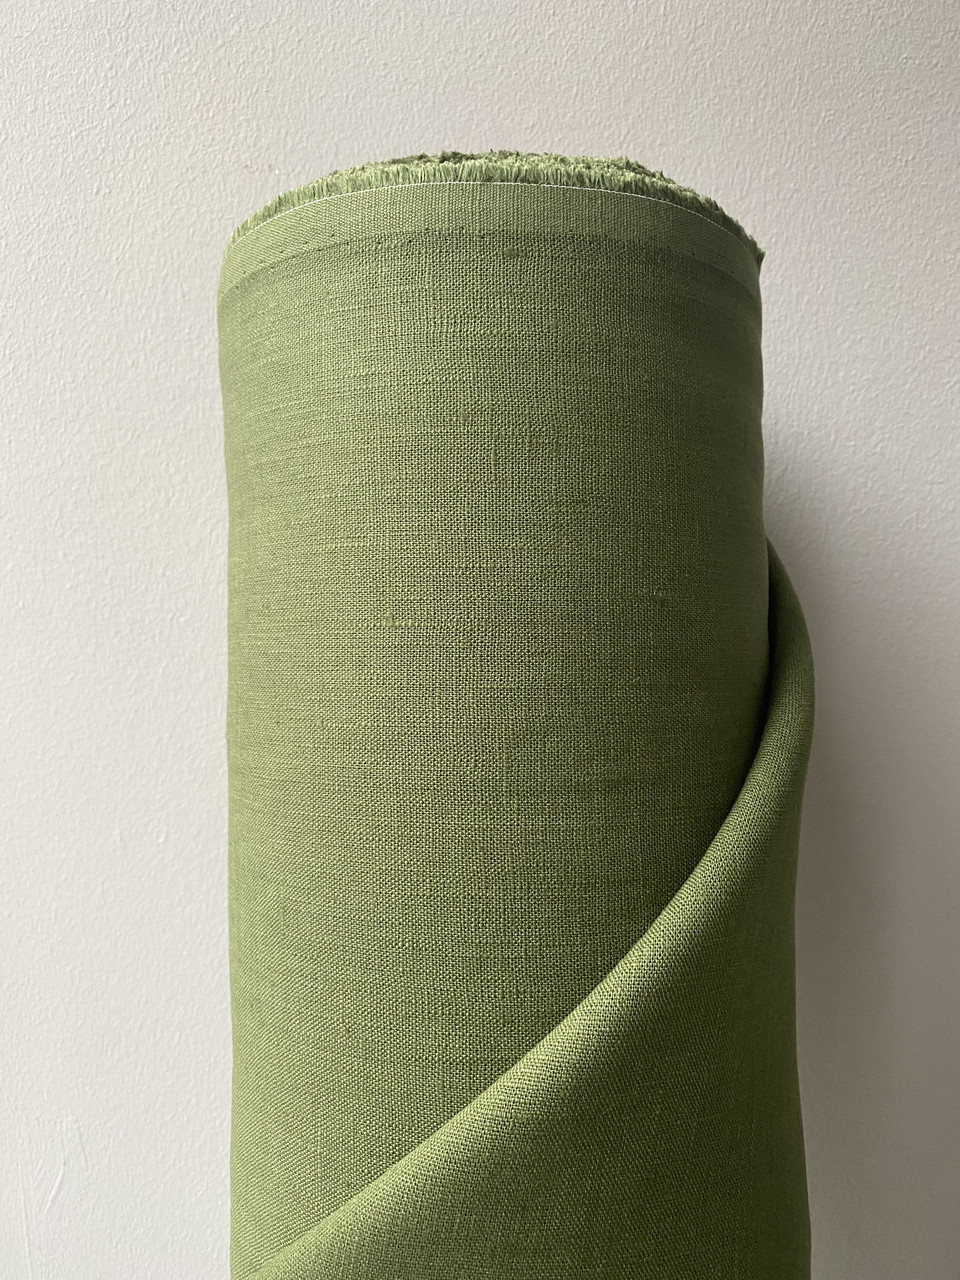 Оливкова лляна тканина, 100% льон, колір 372/054